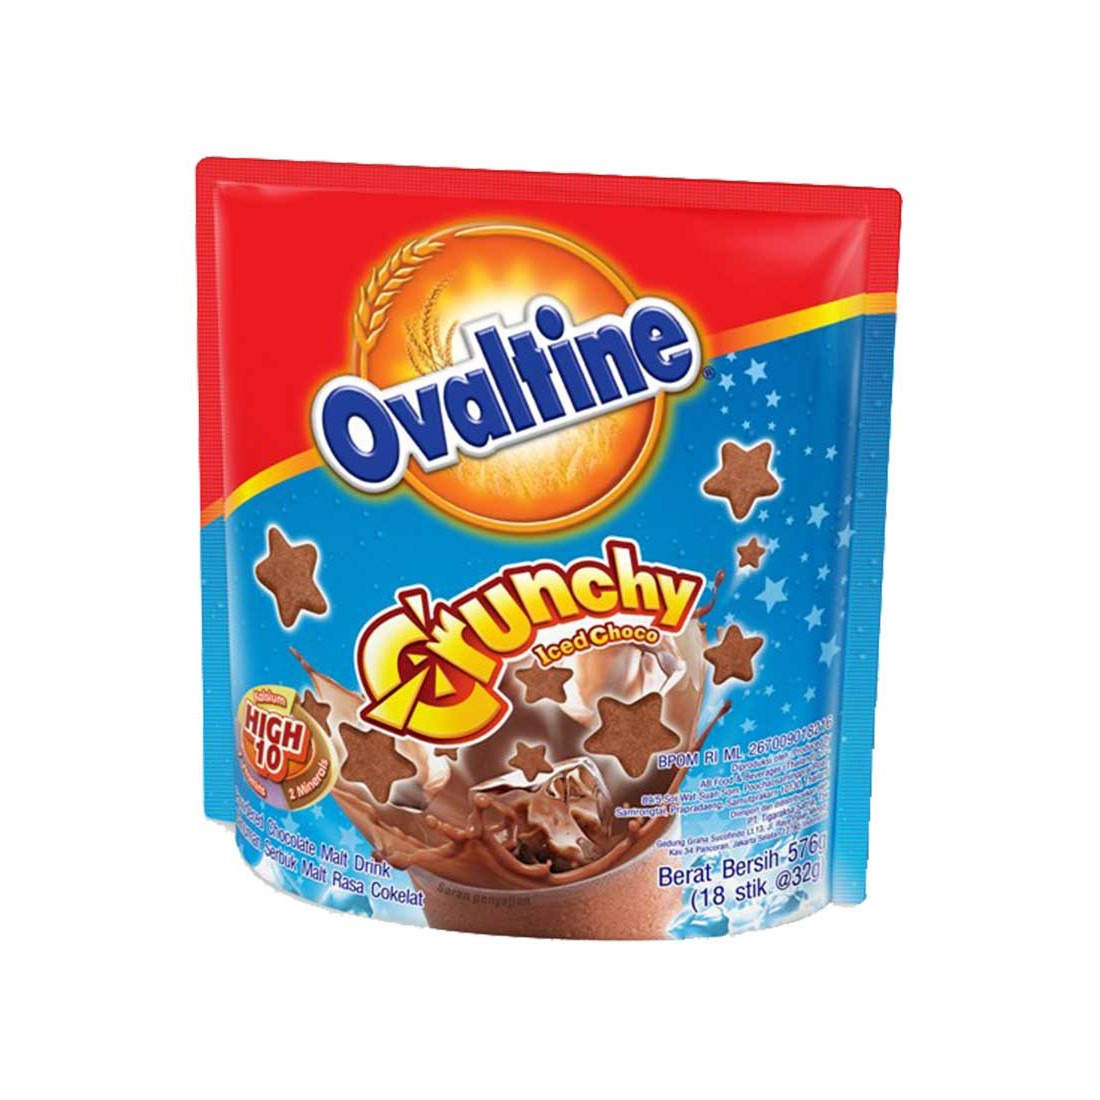 Ovaltine 18x32g Crunchy Chocolate Malt Drink